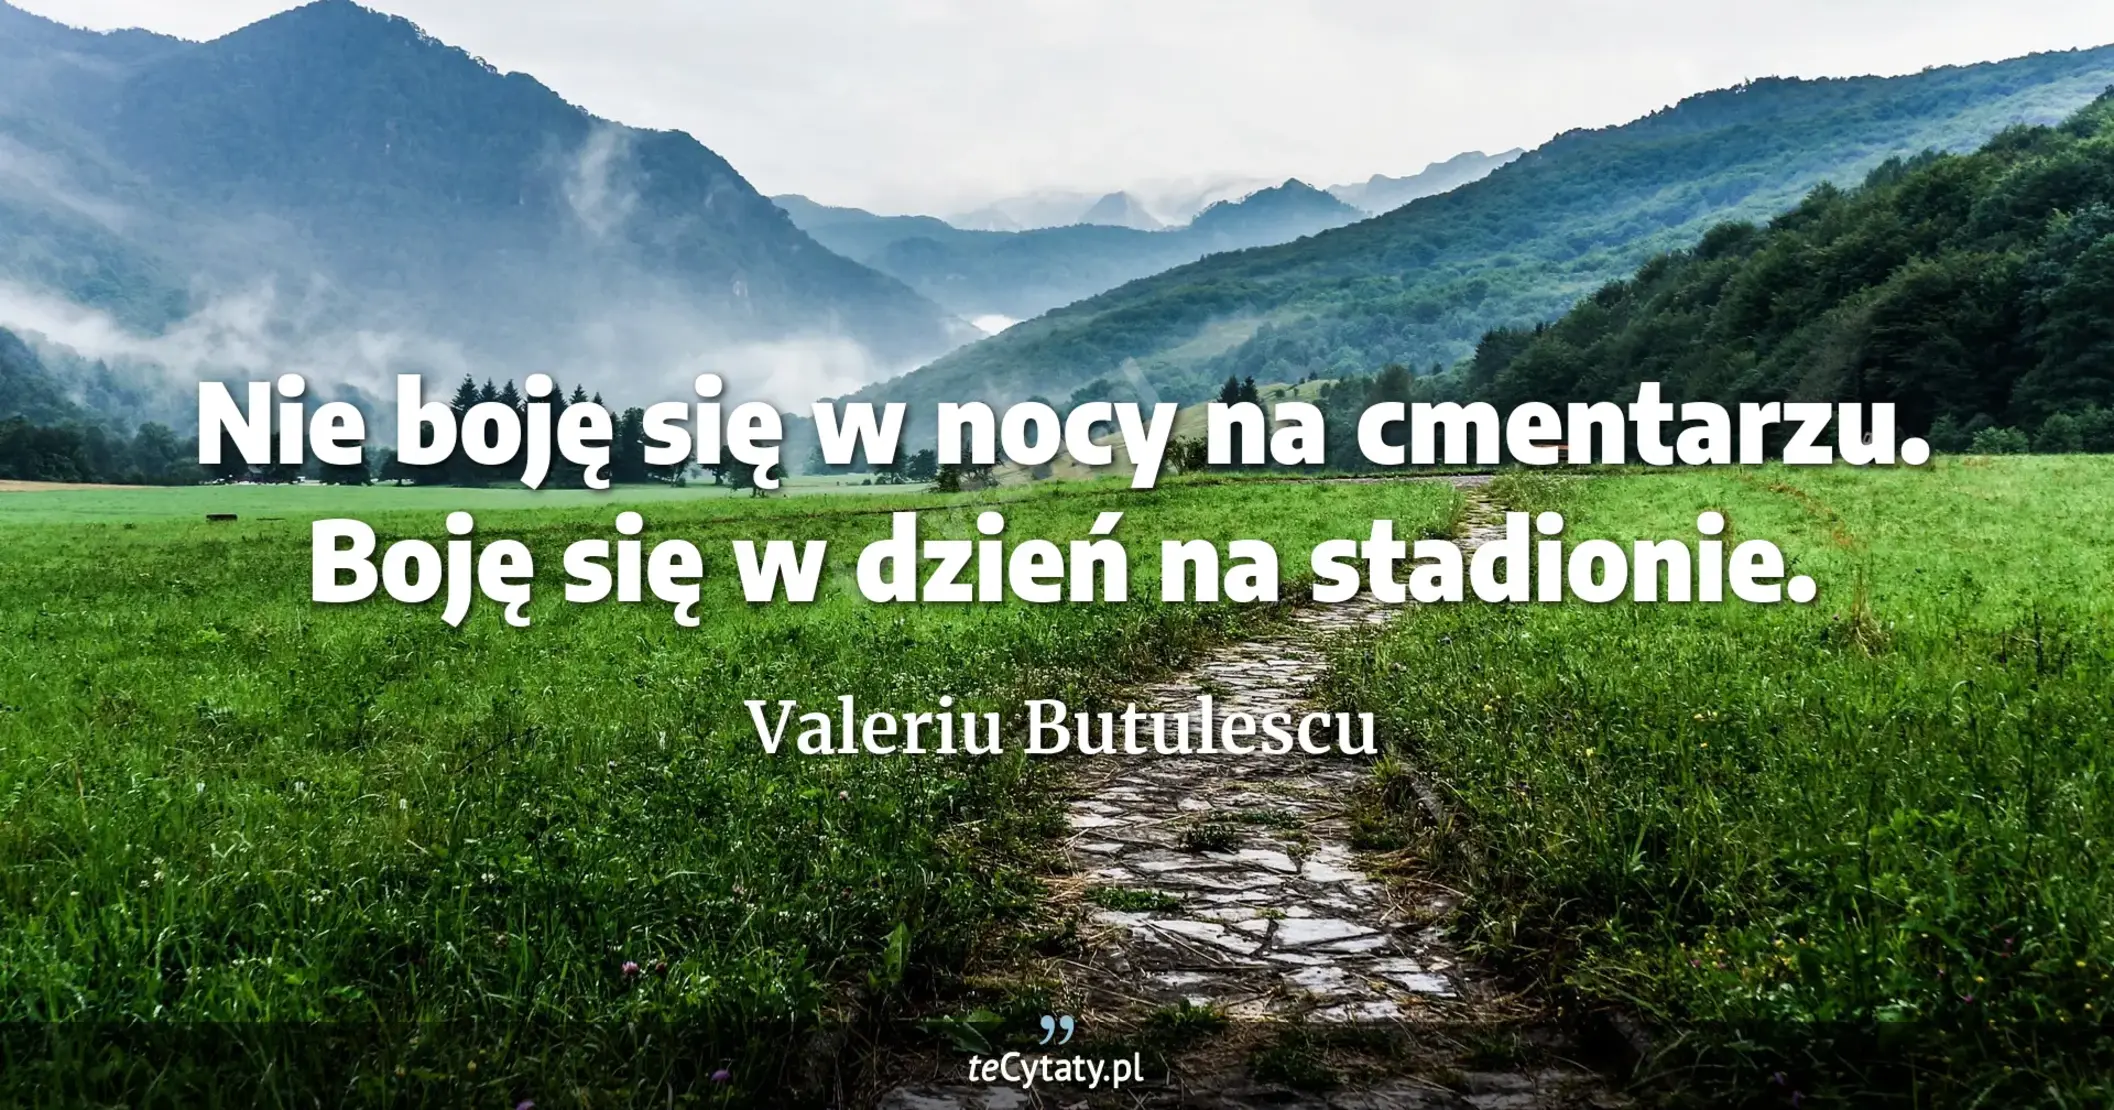 Nie boję się w nocy na cmentarzu. Boję się w dzień na stadionie. - Valeriu Butulescu